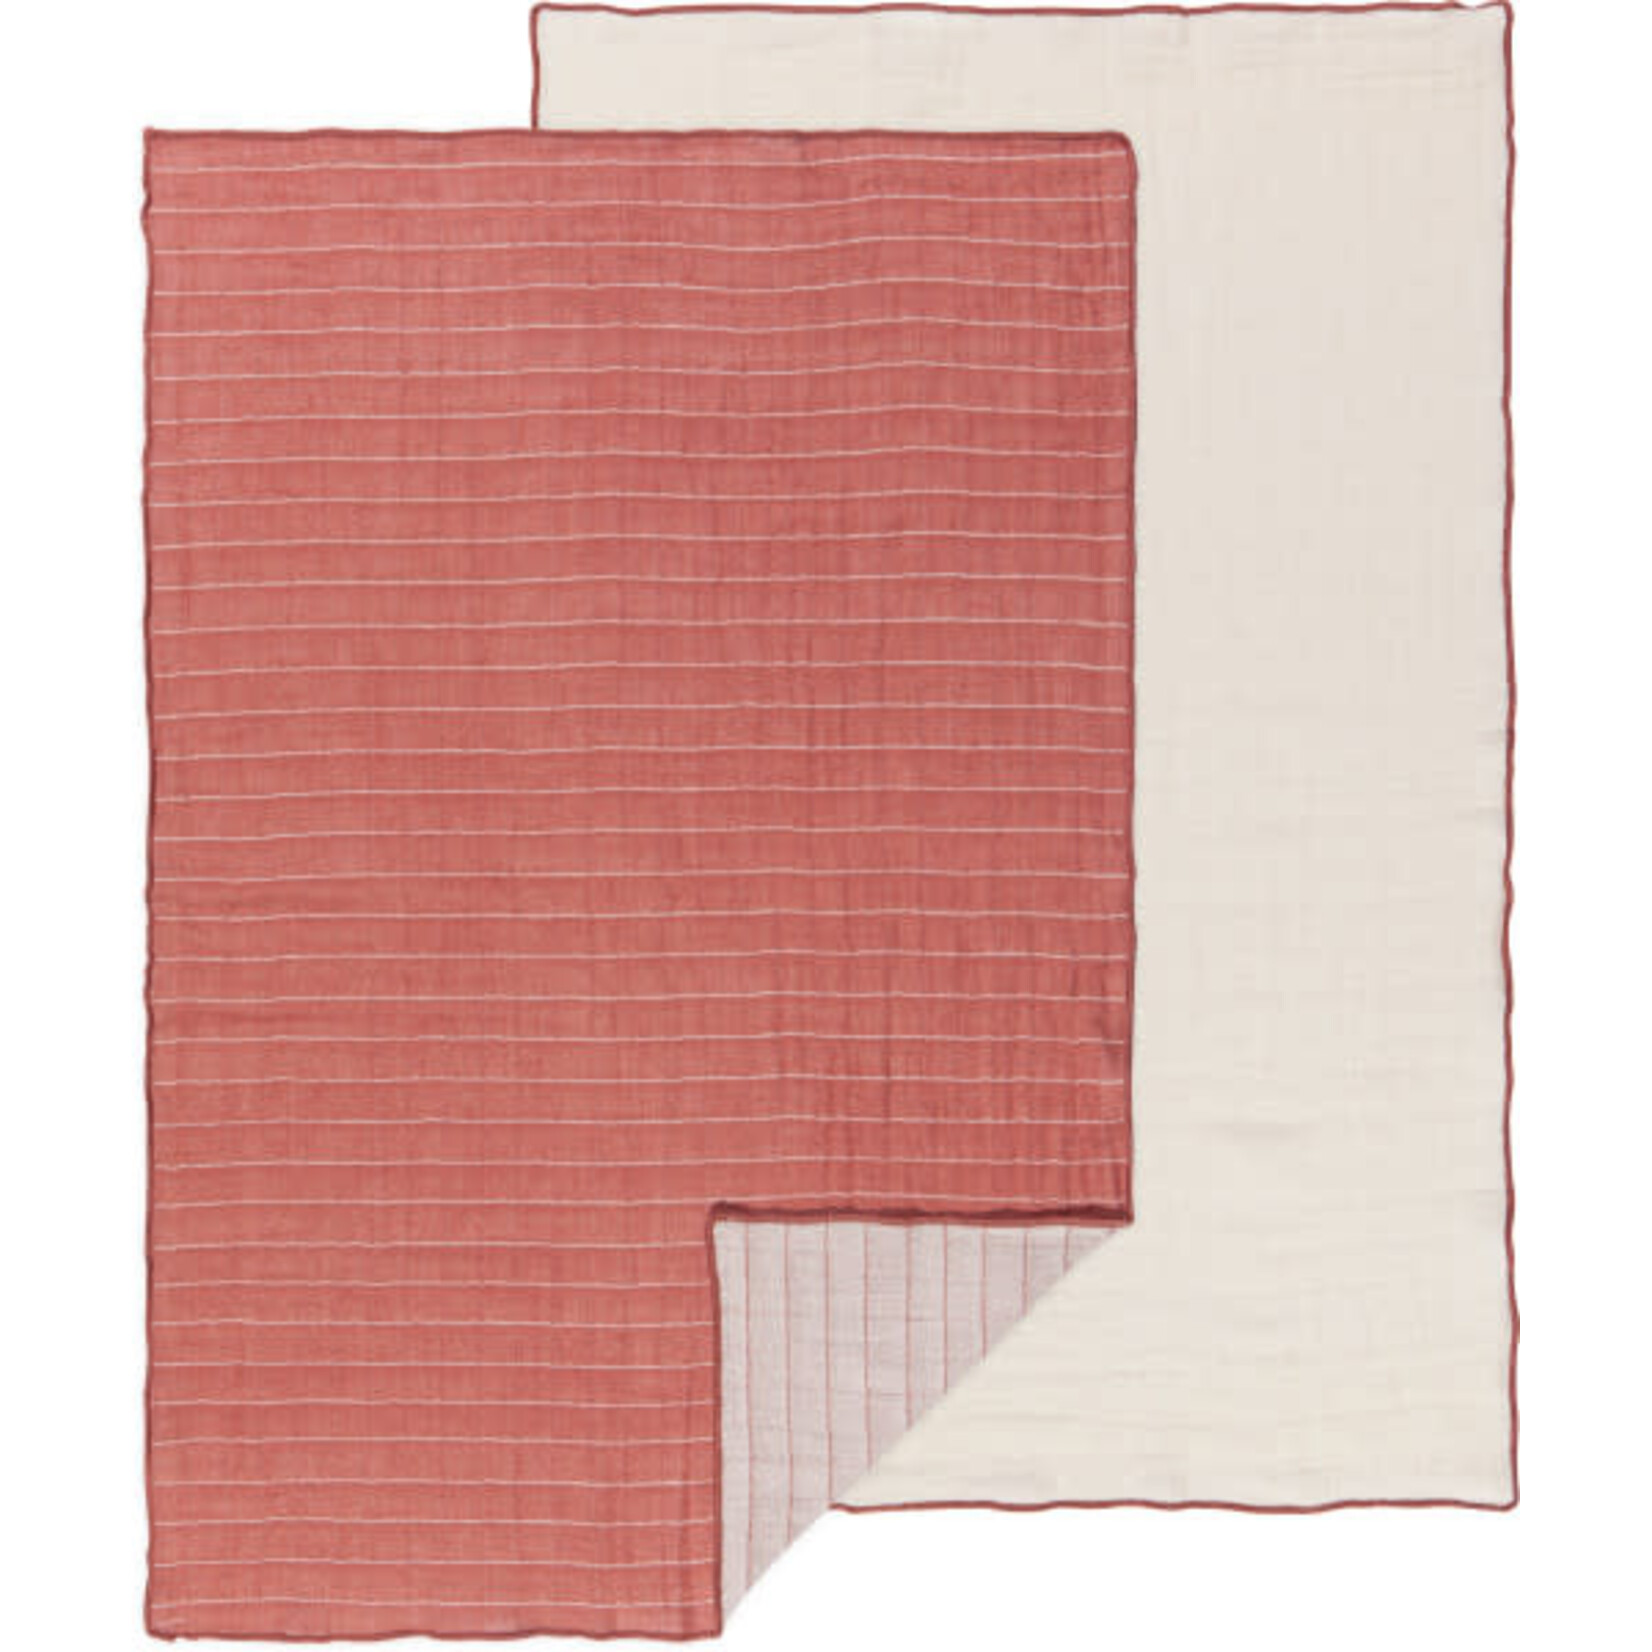 Danica Studios Double Weave Tea Towel - Set of 2